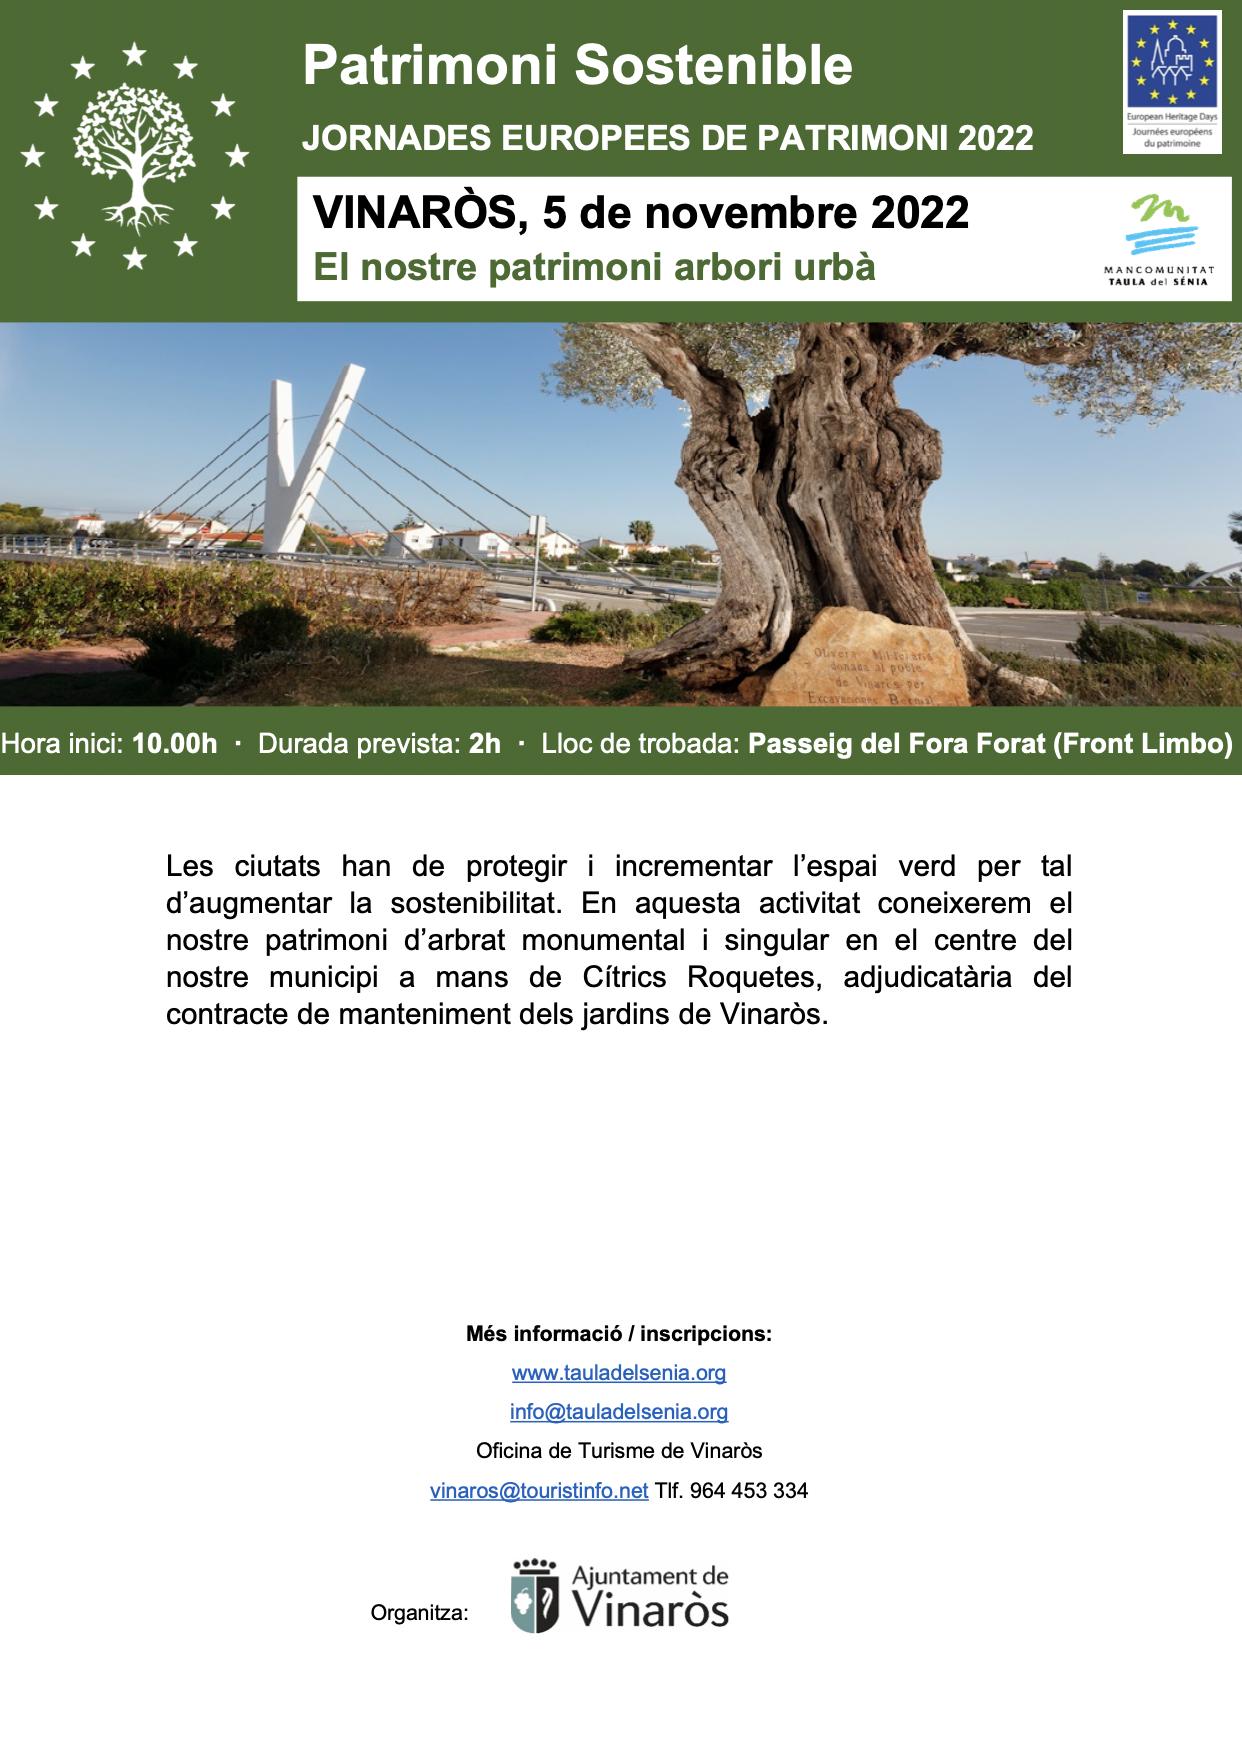 Patrimonio sostenible charla paseo vinaròs